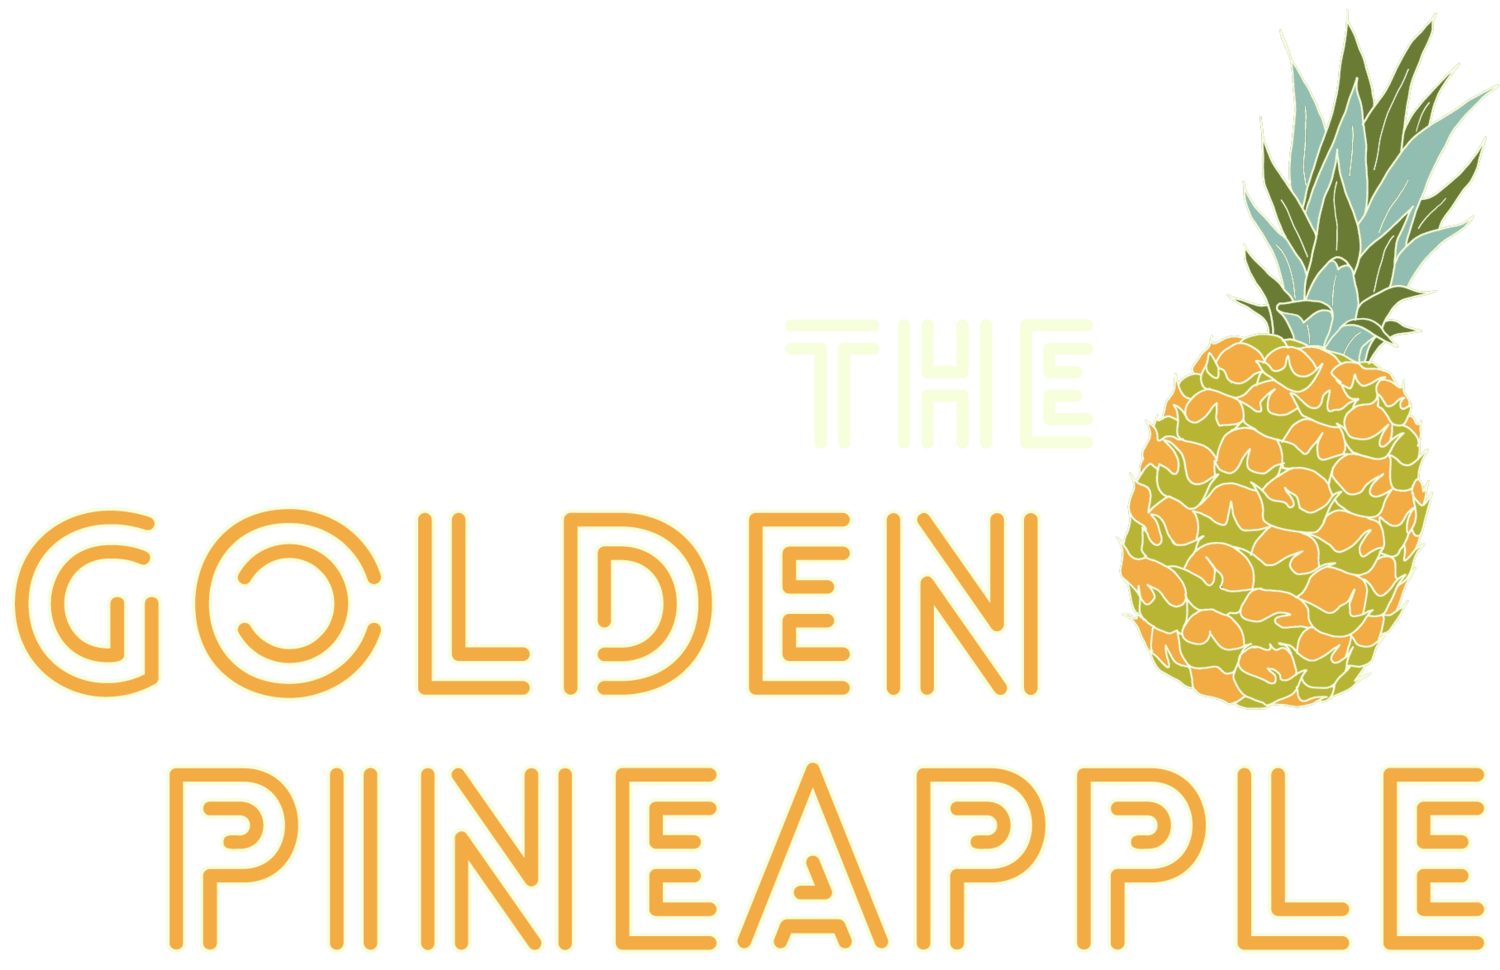 The Golden Pineapple